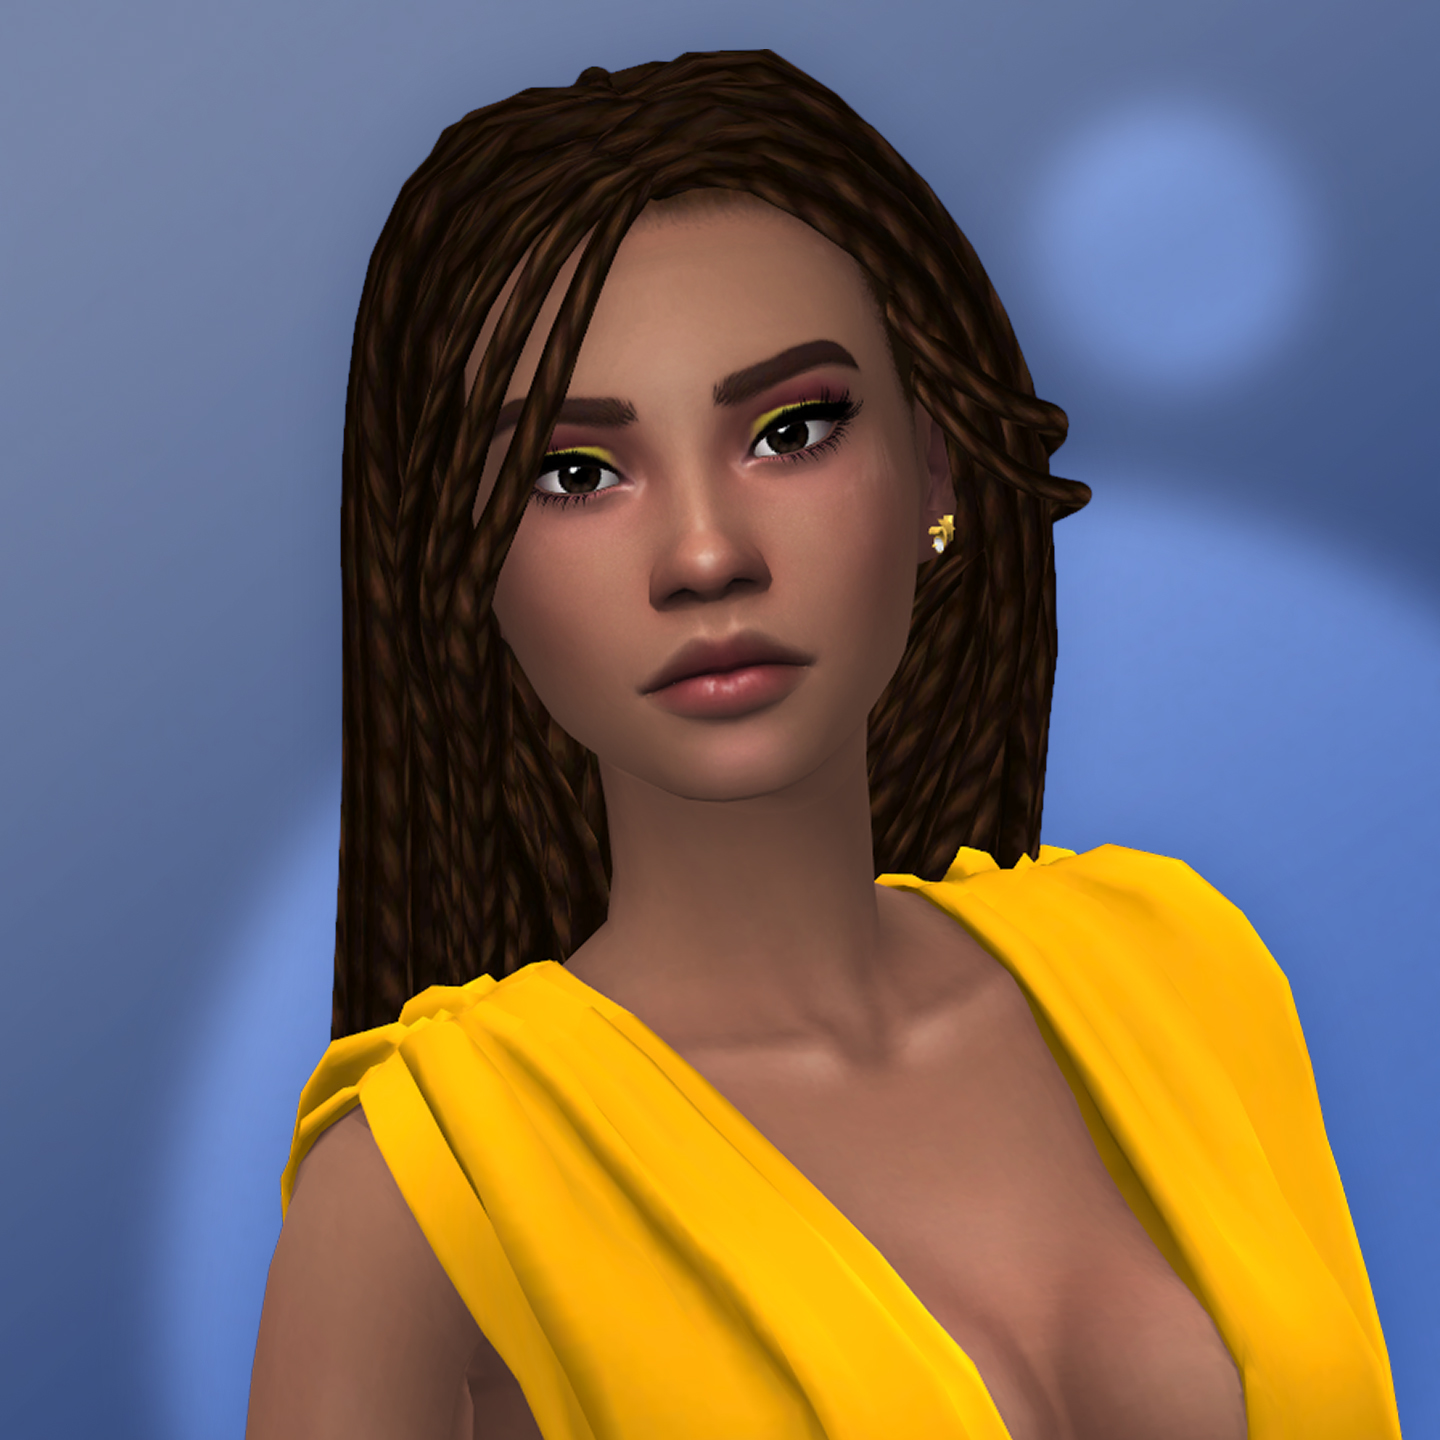 QICC - Mhysa Hair - The Sims 4 Create a Sim - CurseForge